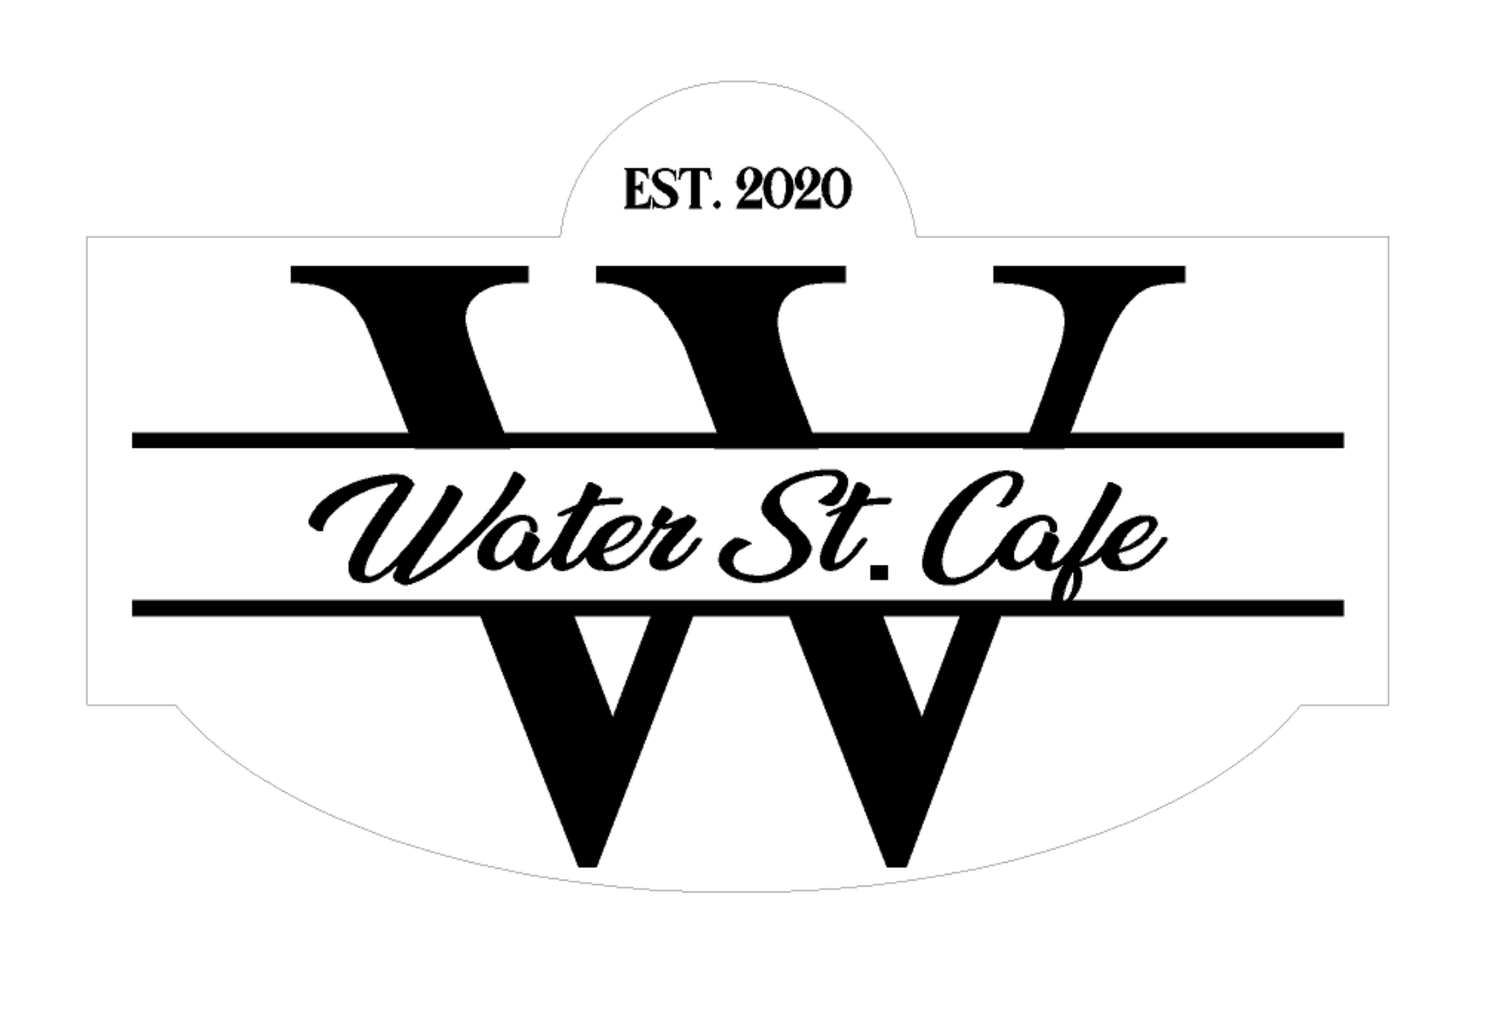 Water St. Cafe NY